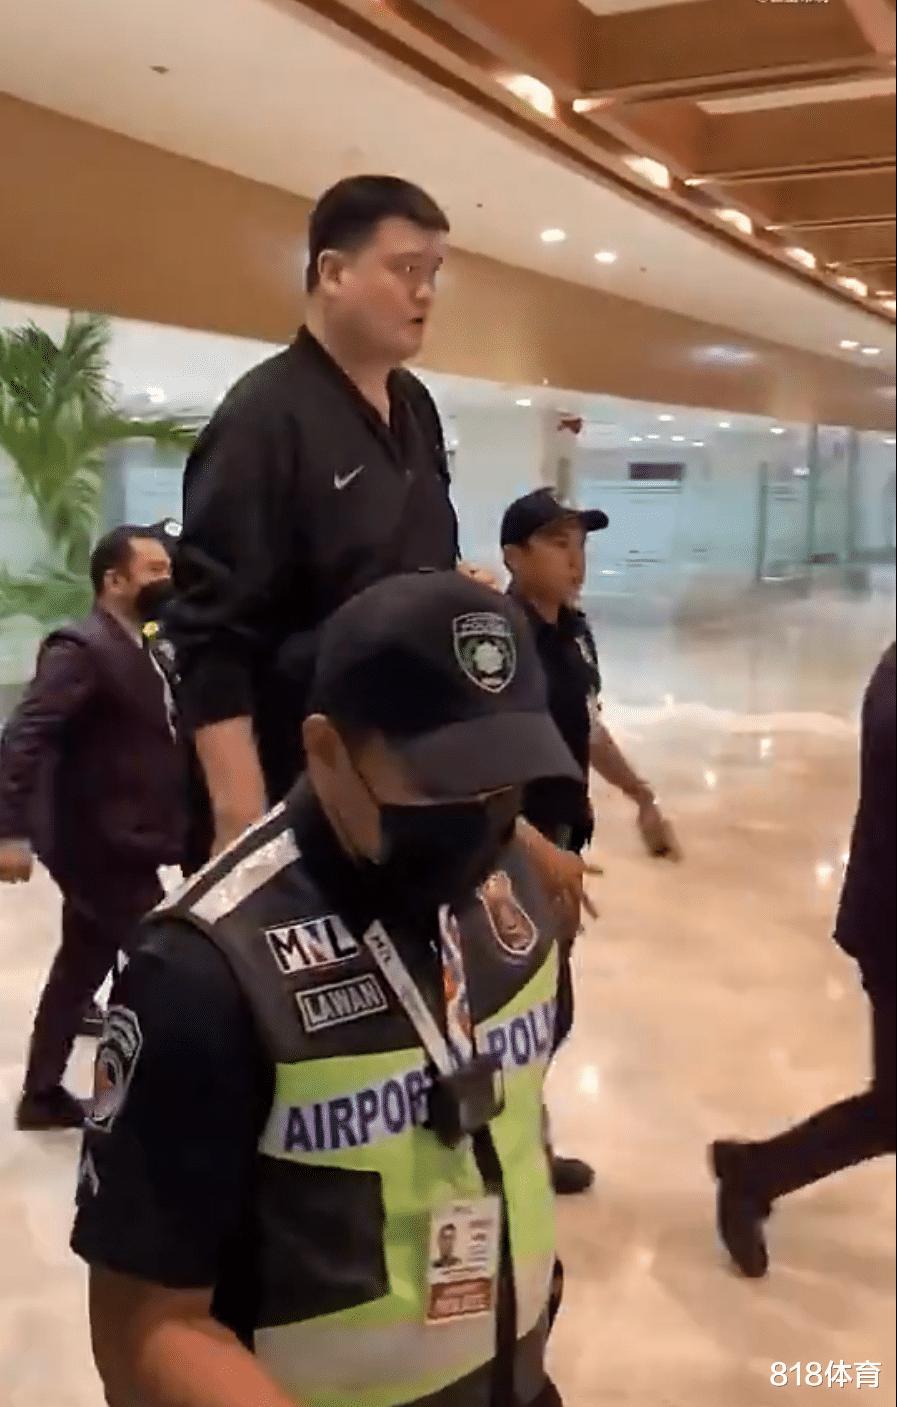 排面! 姚明抵达马尼拉出席世界杯抽签, 10名警察护驾扫地大妈掏手机拍照(5)